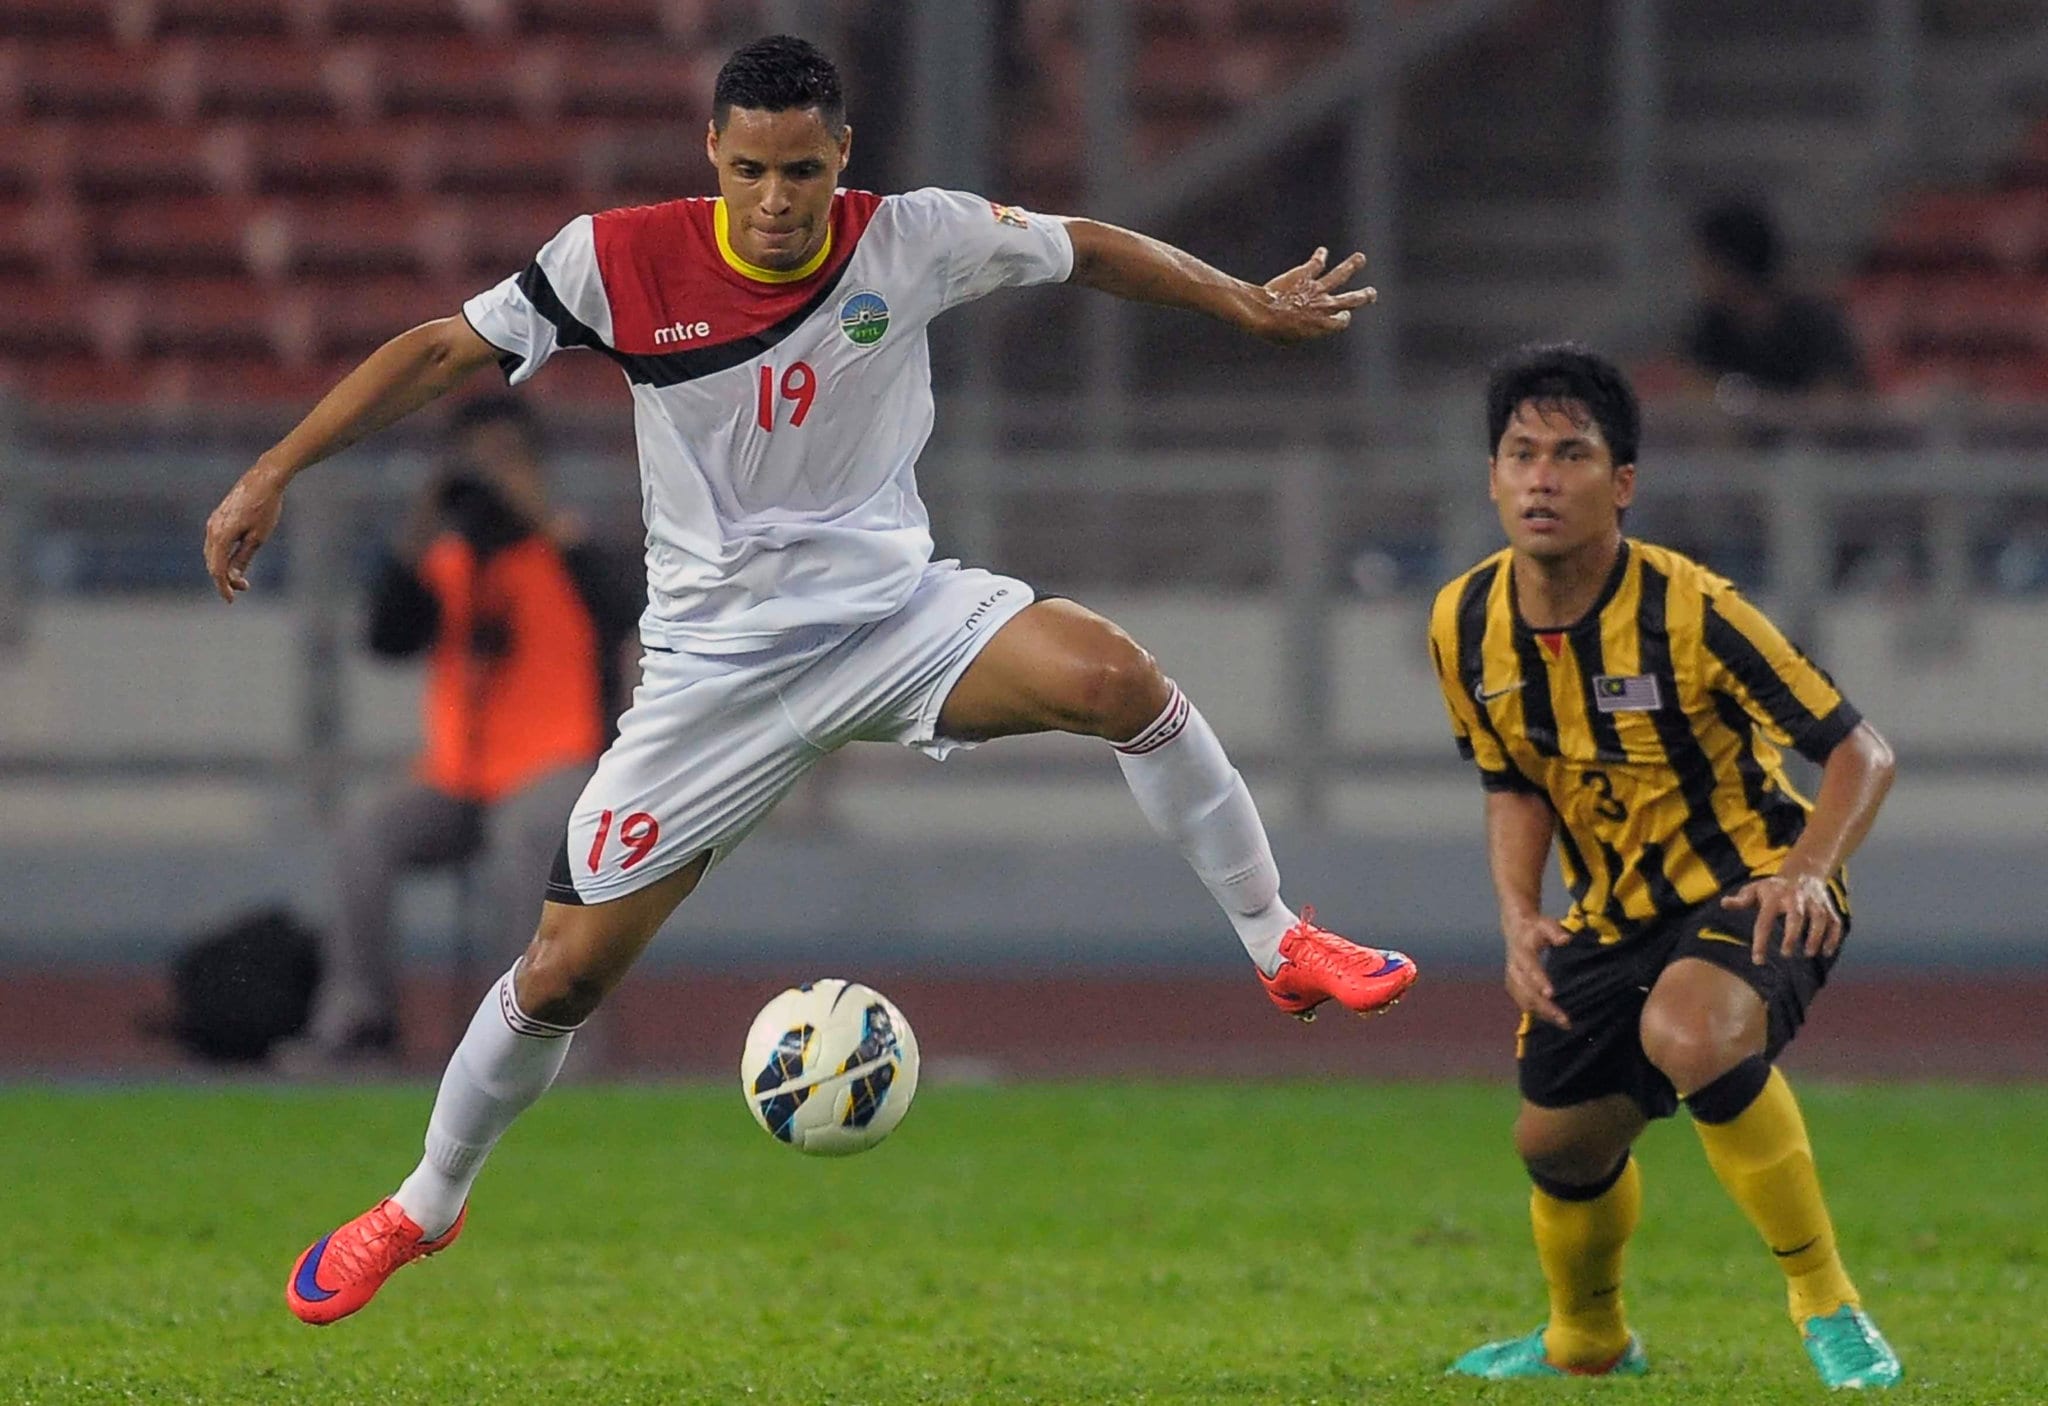 Bola lwn pasukan sepak pasukan kebangsaan kebangsaan sepak bola timor-leste indonesia Skuad negara